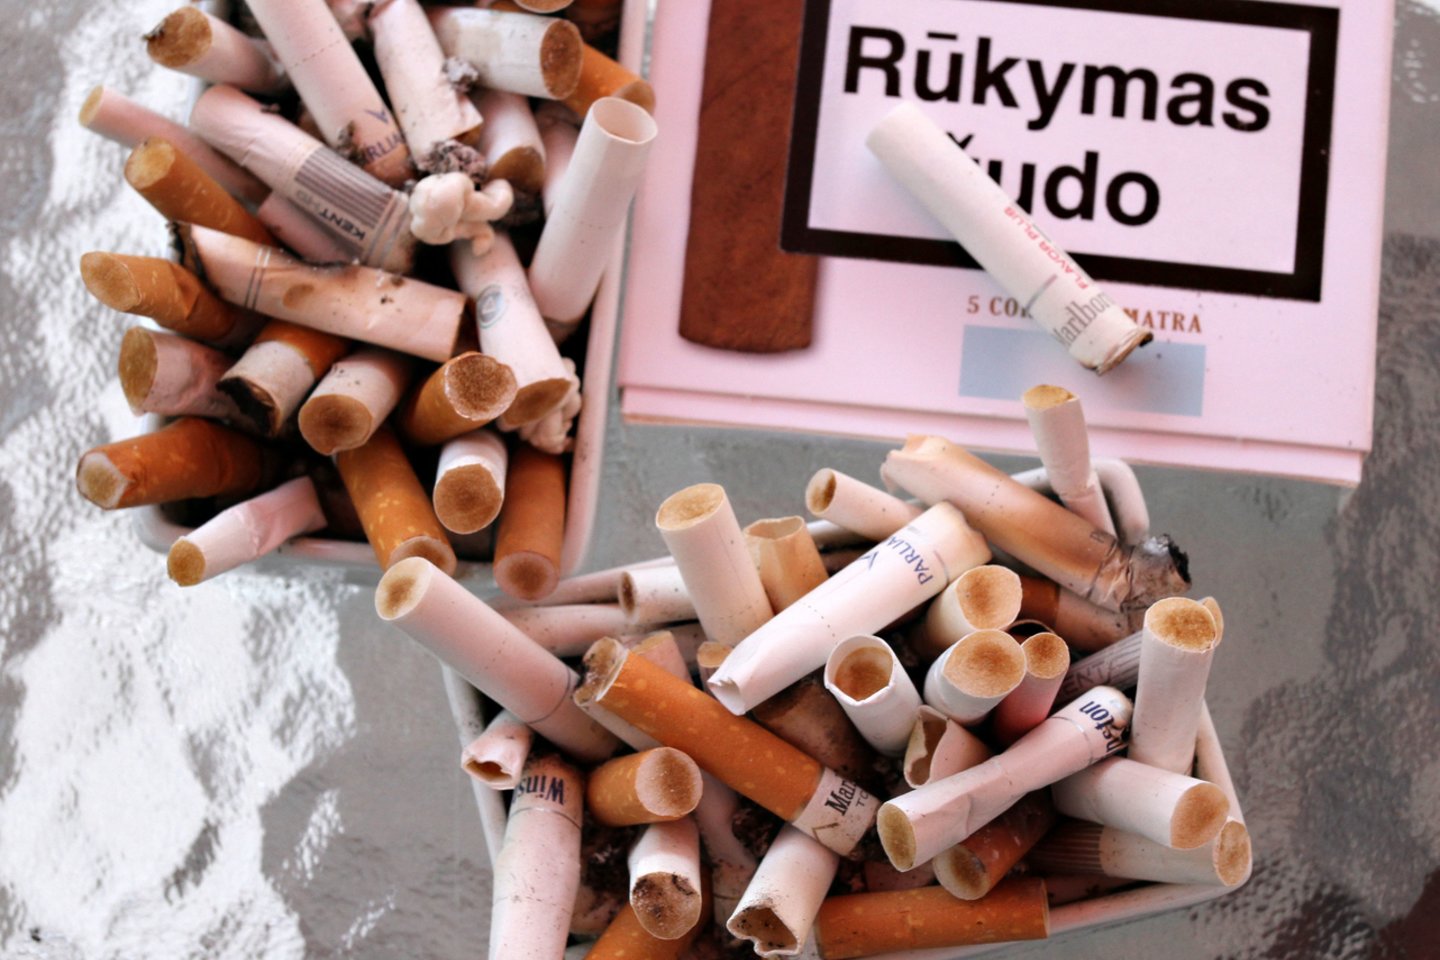 Cigaretė, cigaretės, rūkymas <br>M.Patašiaus nuotr.